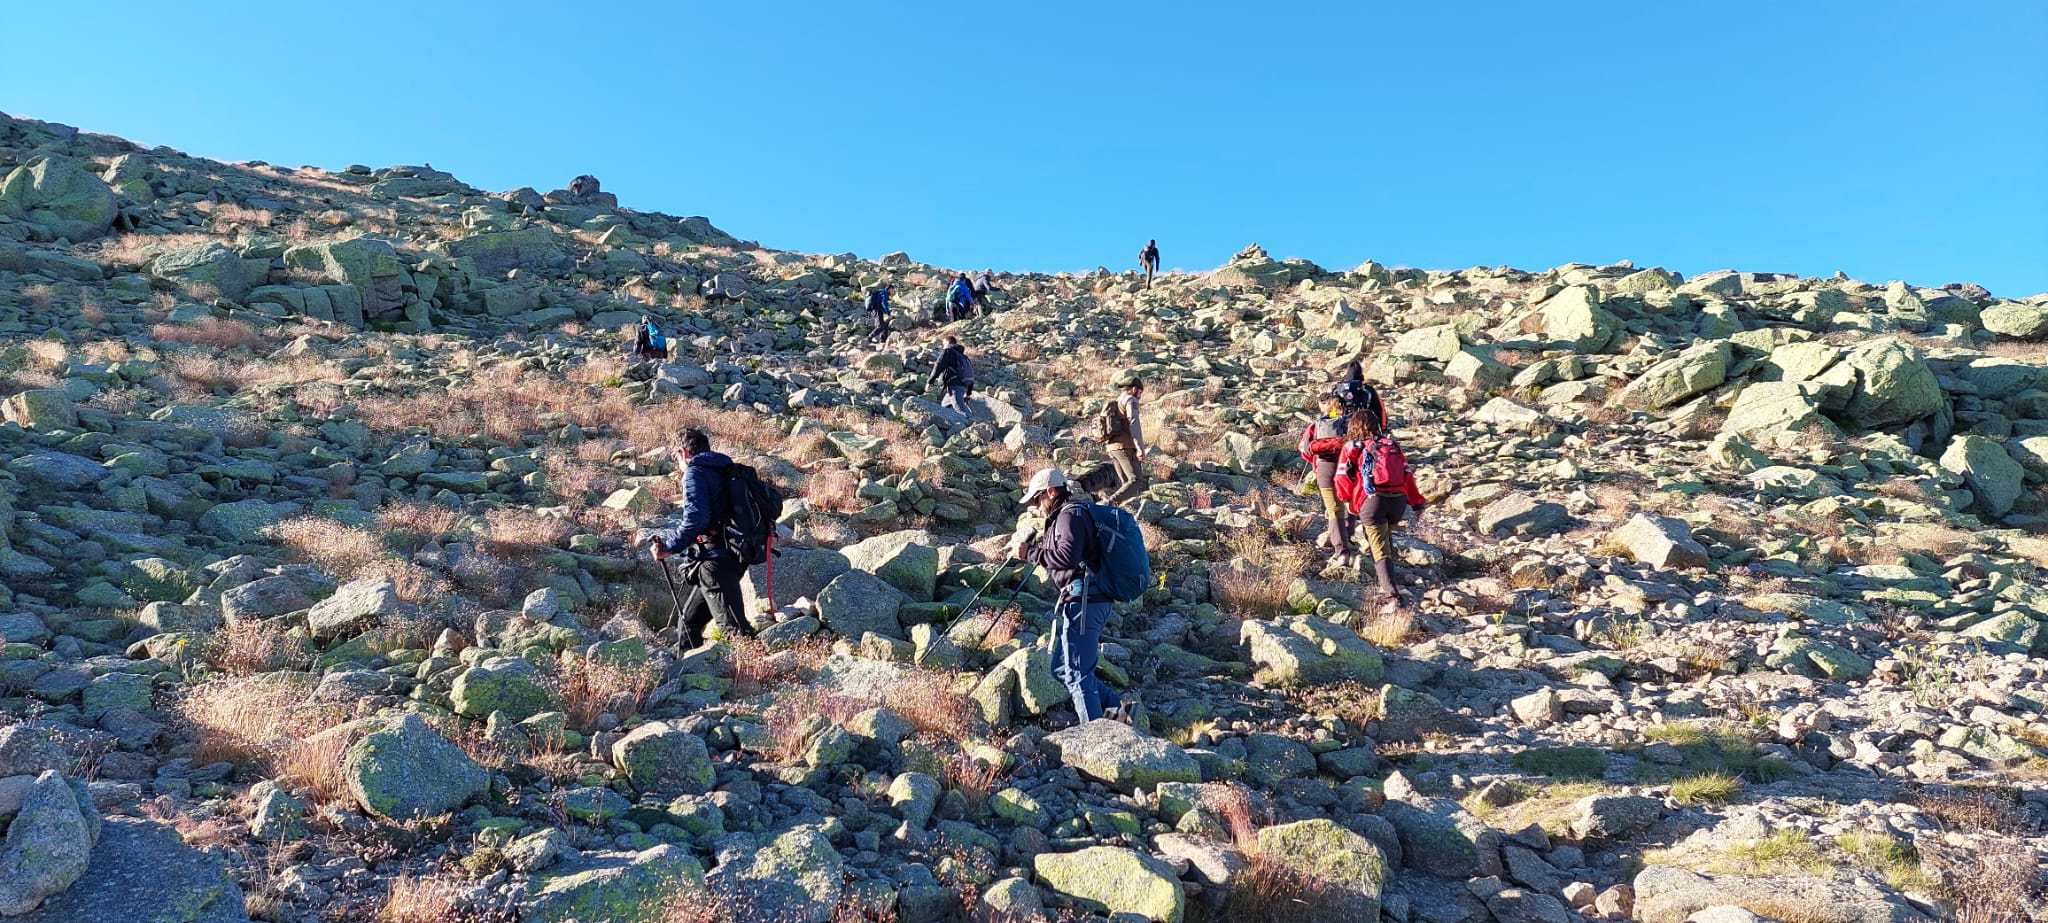 UCAS de Arrate y voluntarios expertos en montaña han batido de nuevo la Sierra de Béjar